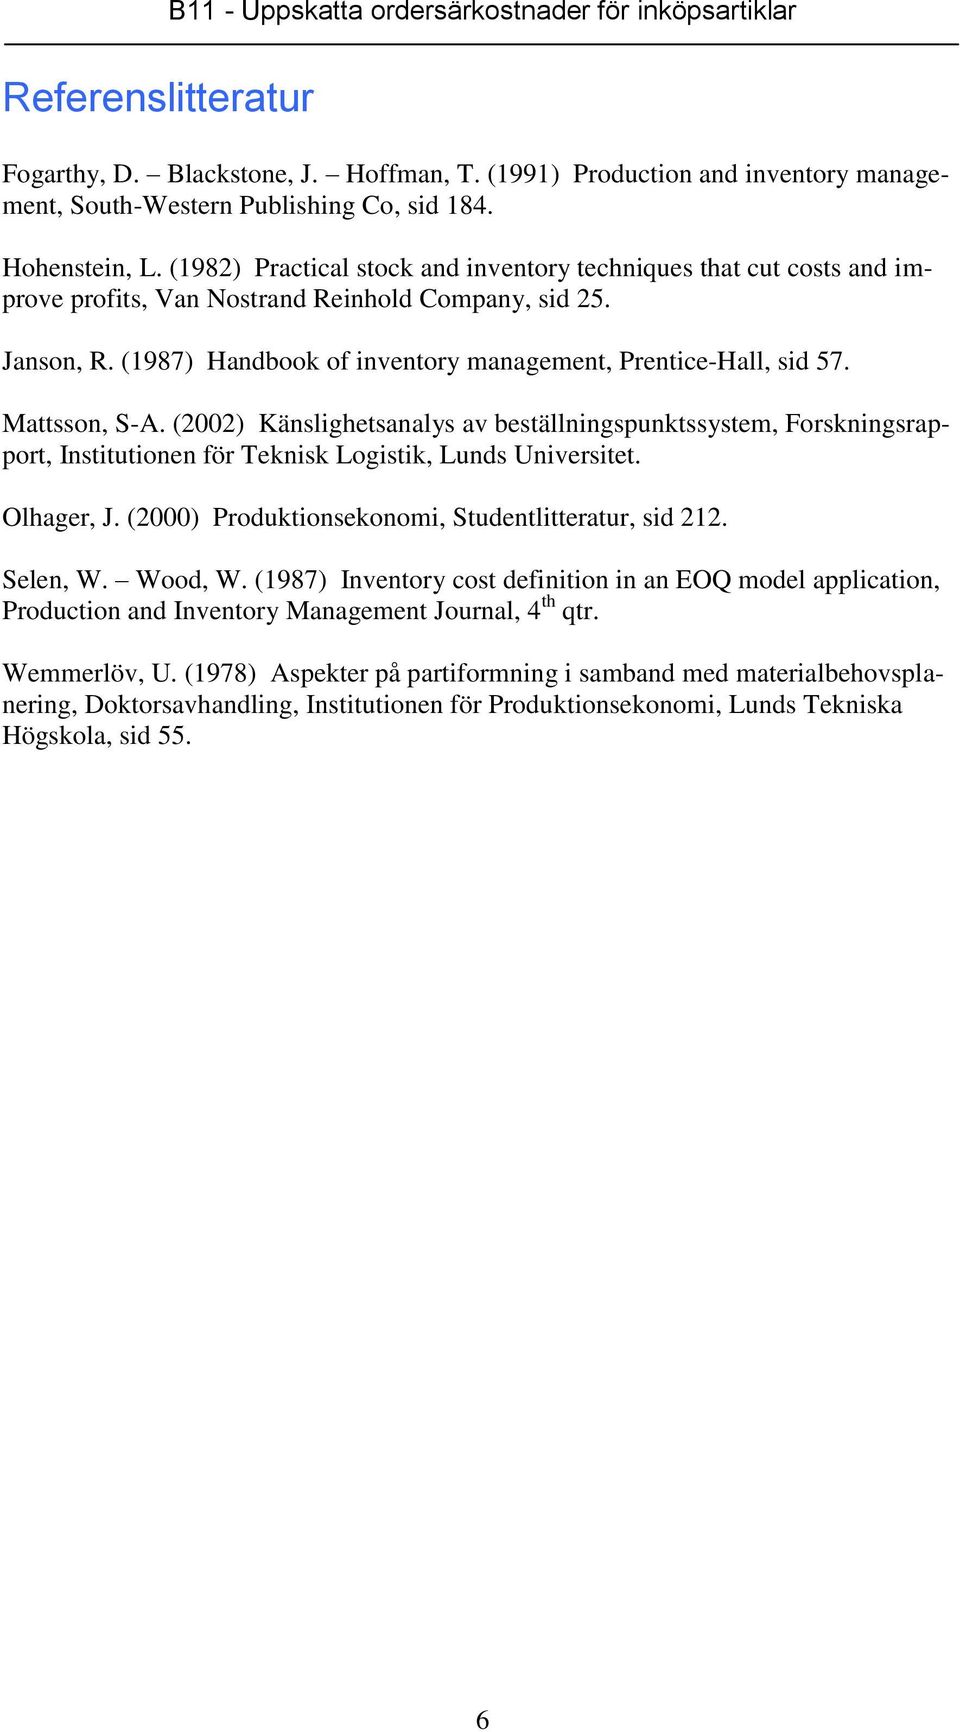 (2002) Känslightsanalys a bställningspnktssystm, Frskningsrapprt, Instittinn för Tknisk Lgistik, Lnds Unirsitt. Olhagr, J. (2000) Prdktinsknmi, Stdntlittratr, sid 212. Sln, W. Wd, W.